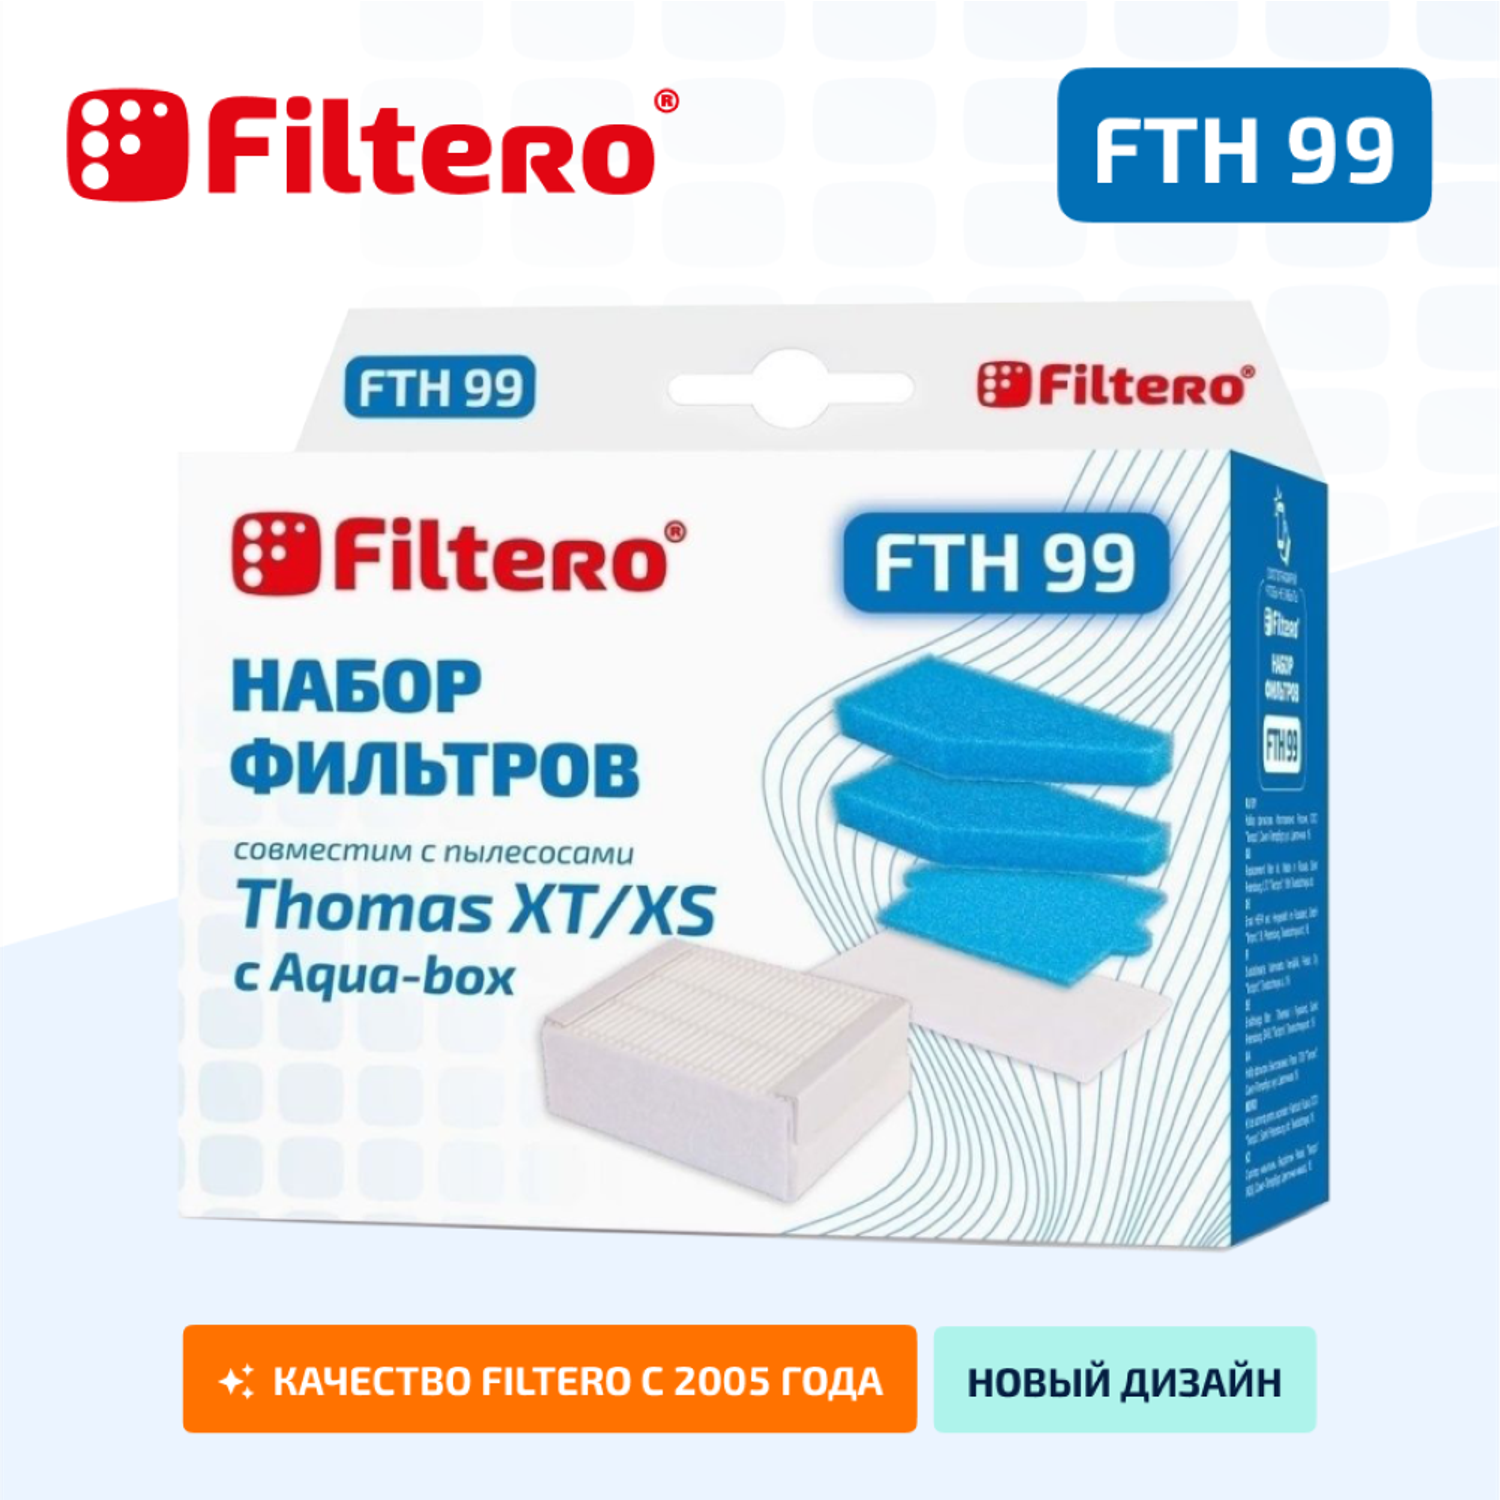 Набор фильтров HEPA Filtero FTH 99 TMS для пылесосов Thomas XT/XS - фото 2